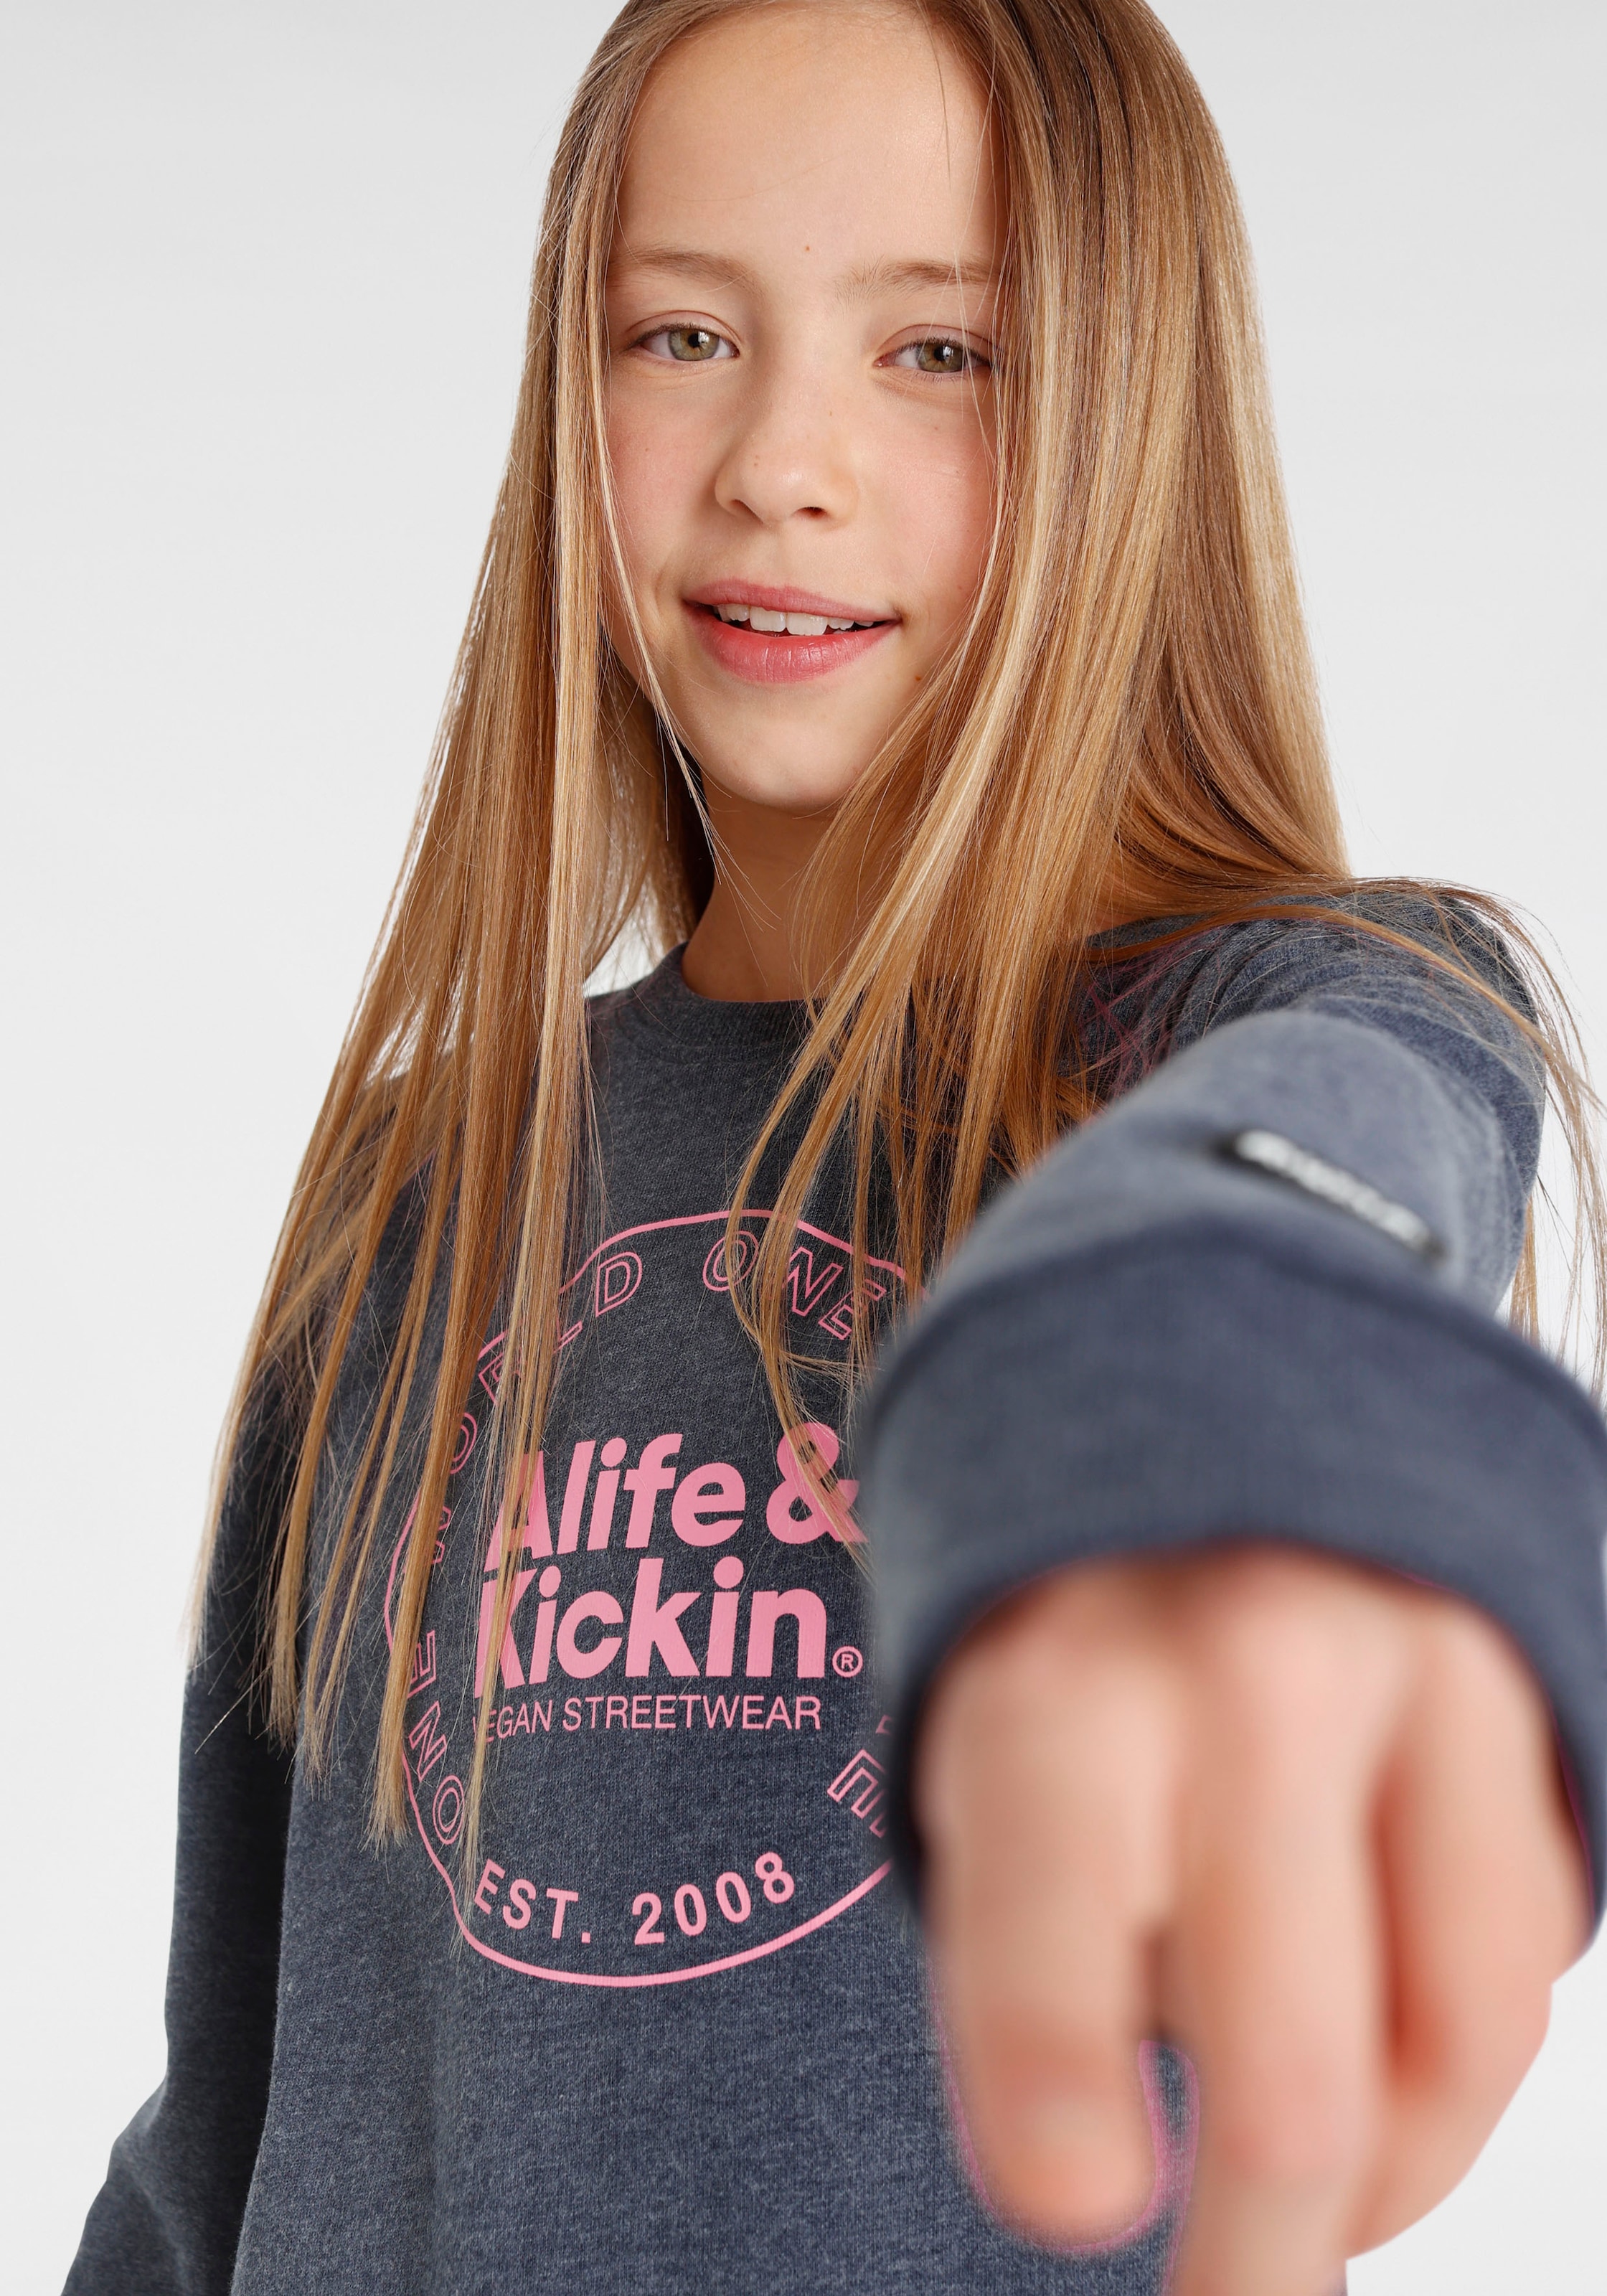 & Logo online Druck«, kaufen »mit Kickin Alife Sweatshirt Alife MARKE! Kickin Kids. & für NEUE